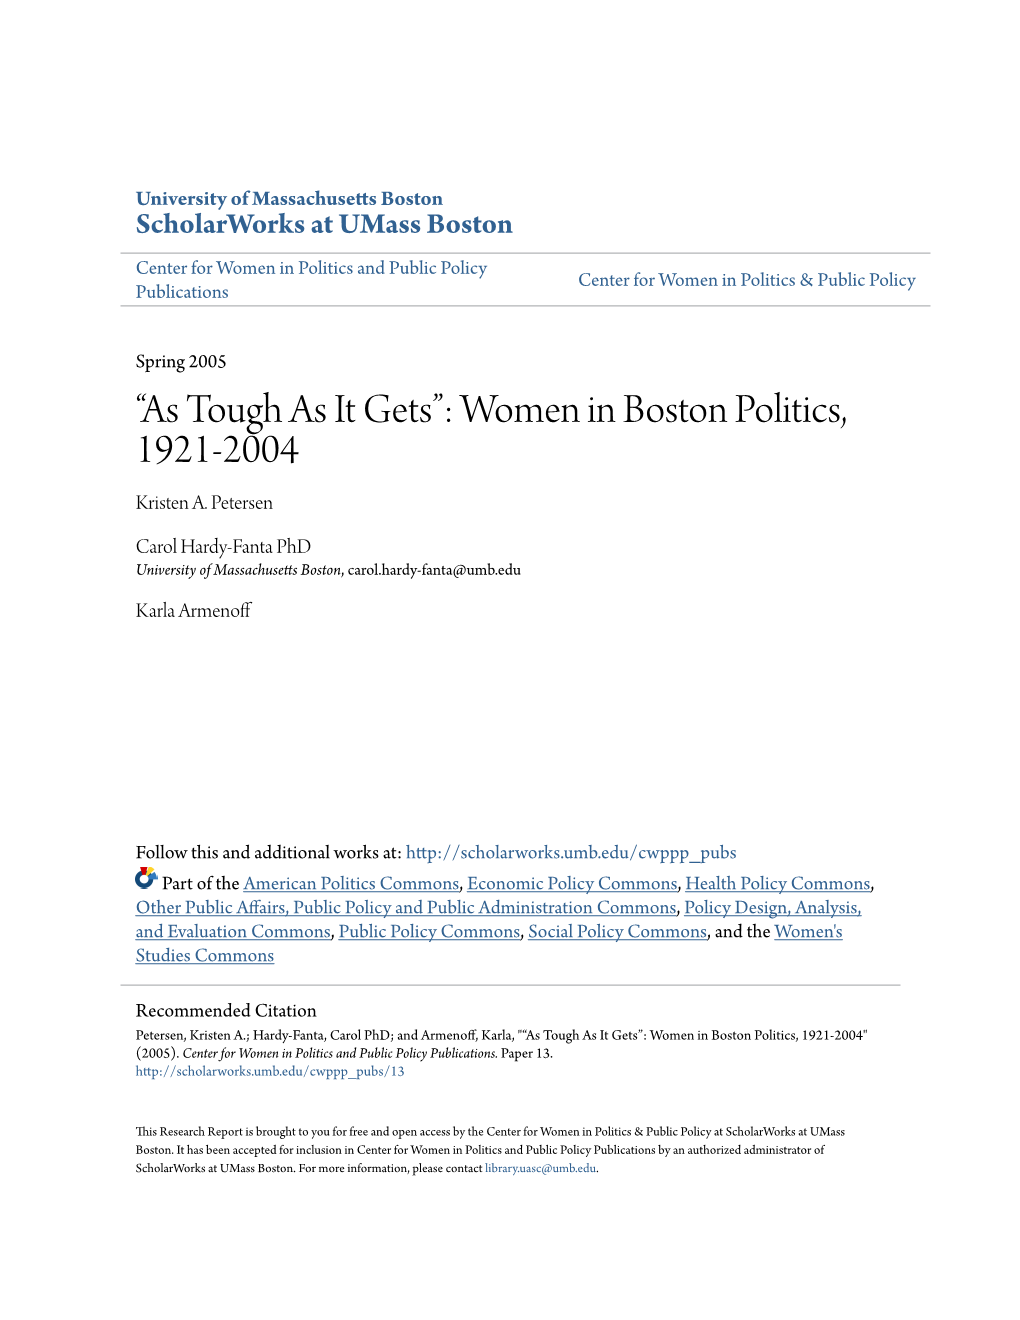 Women in Boston Politics, 1921-2004 Kristen A